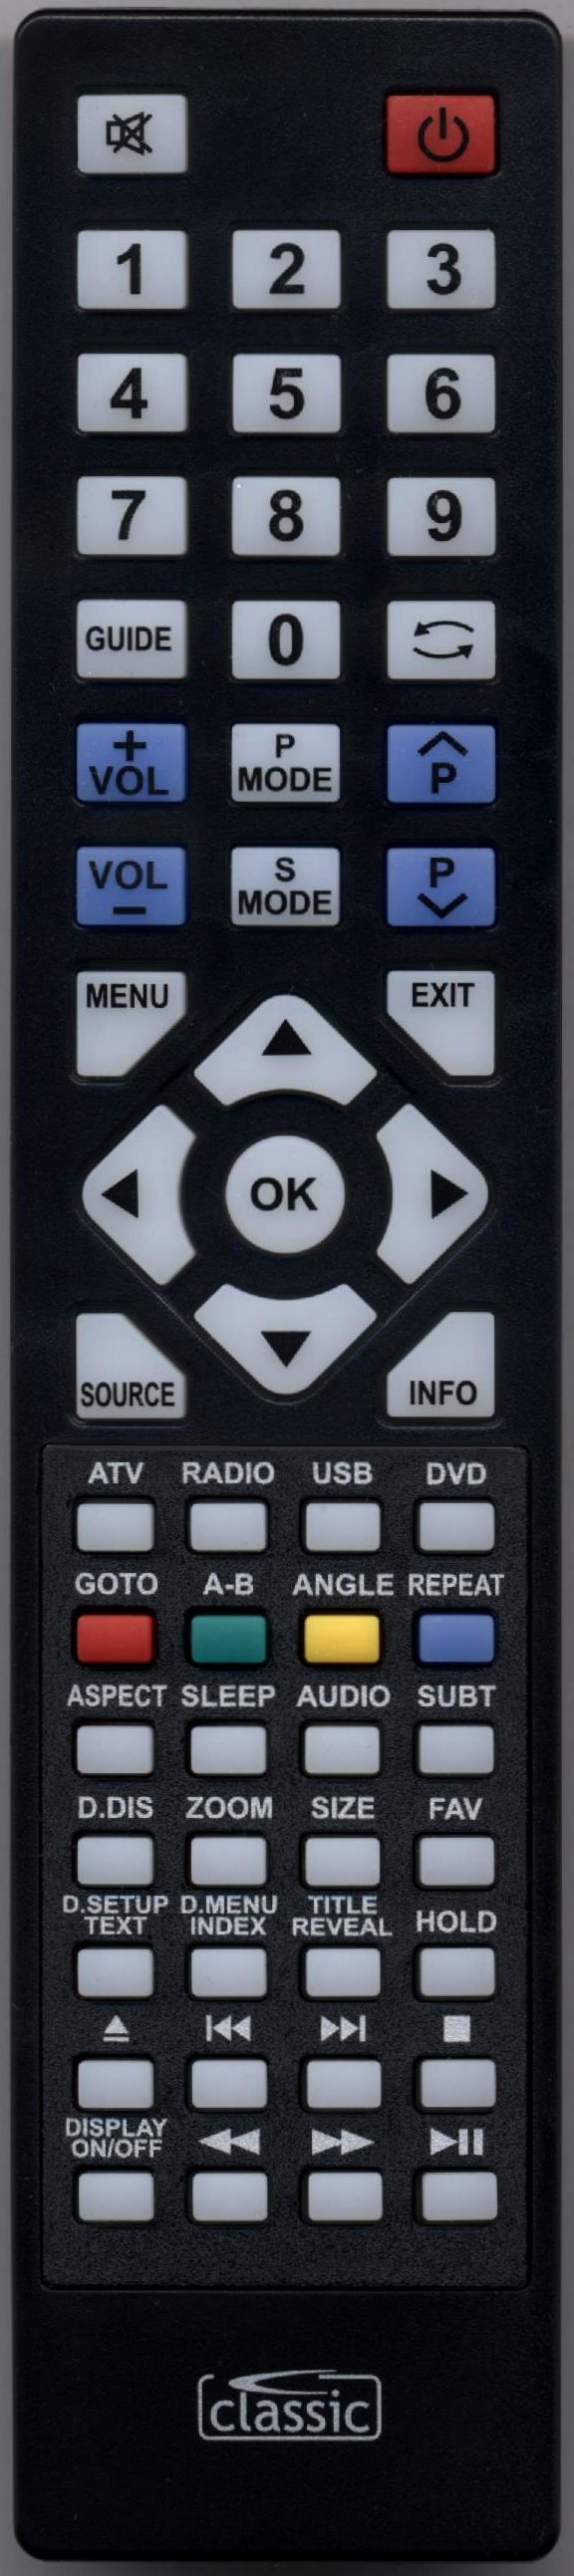 TECHNIKA LCD32-56L Remote Control